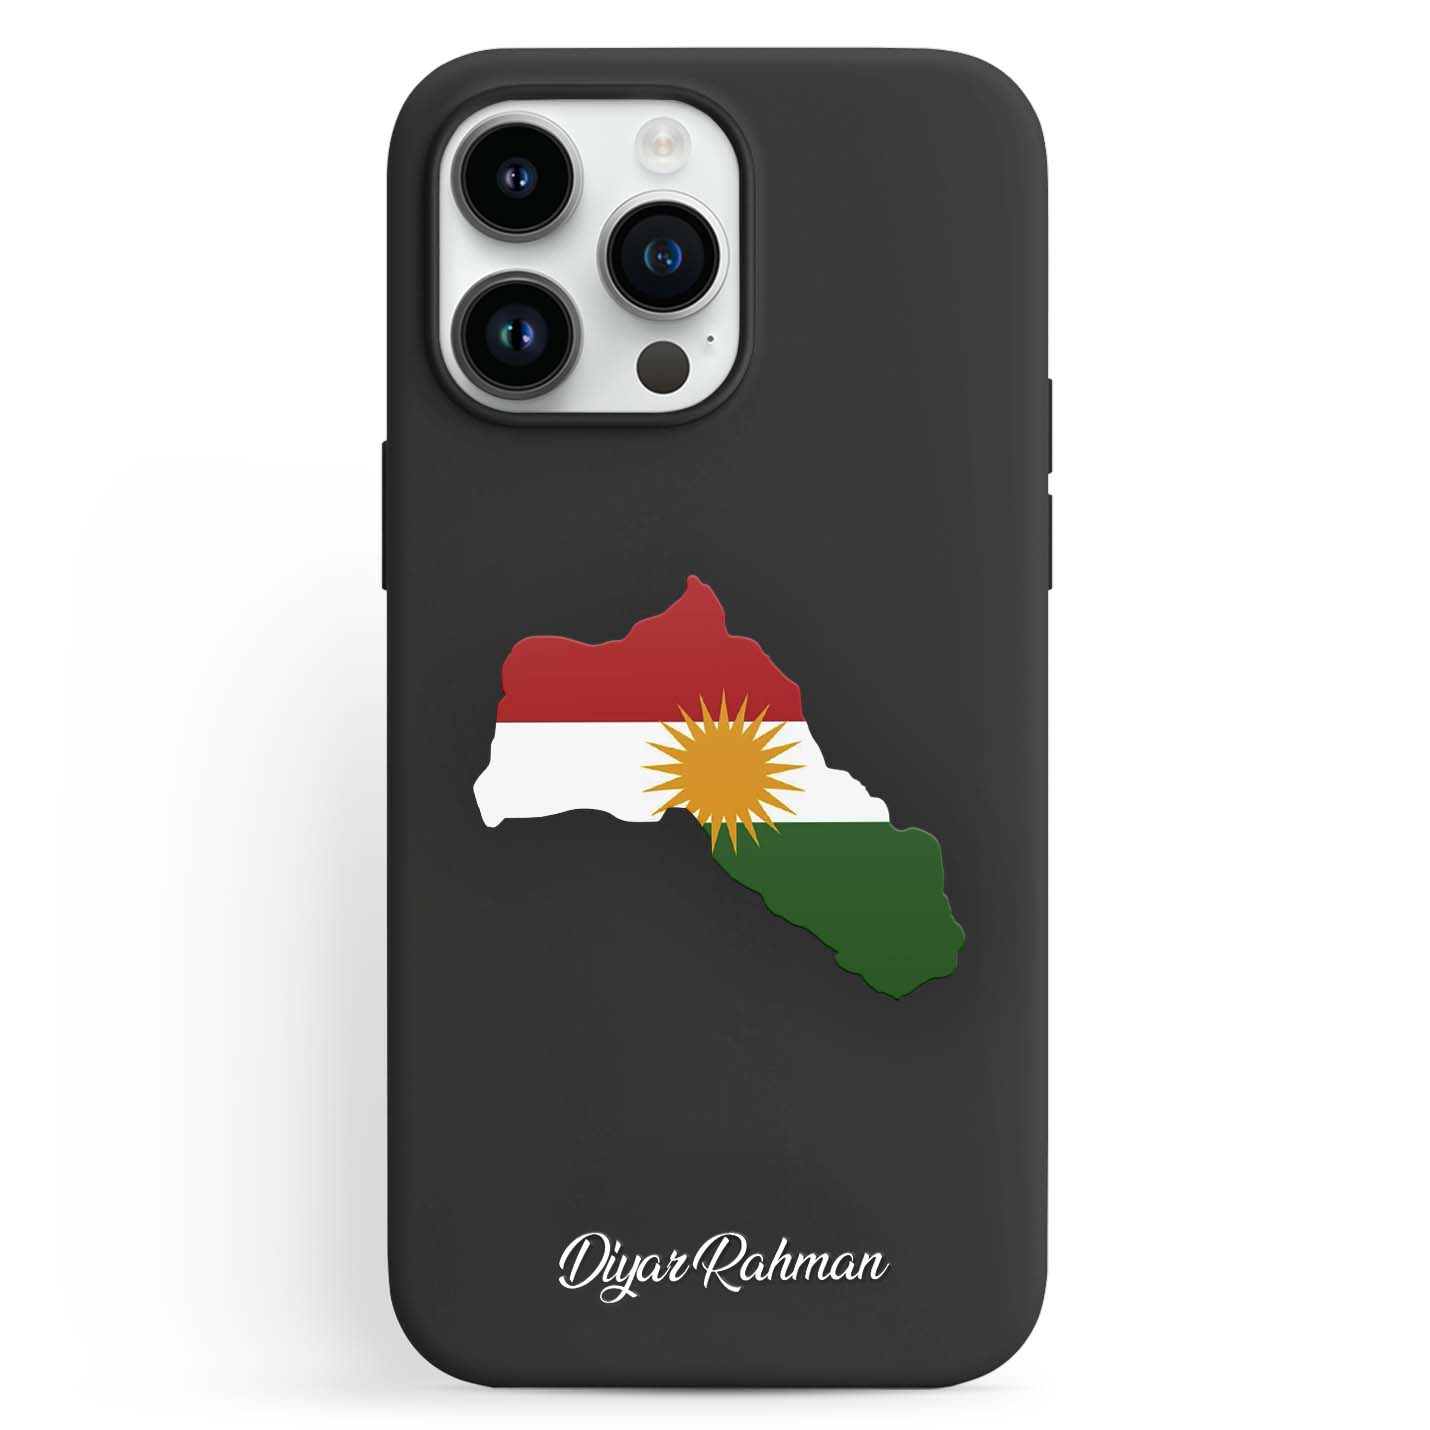 Handyhüllen mit Flagge - Kurdistan - 1instaphone